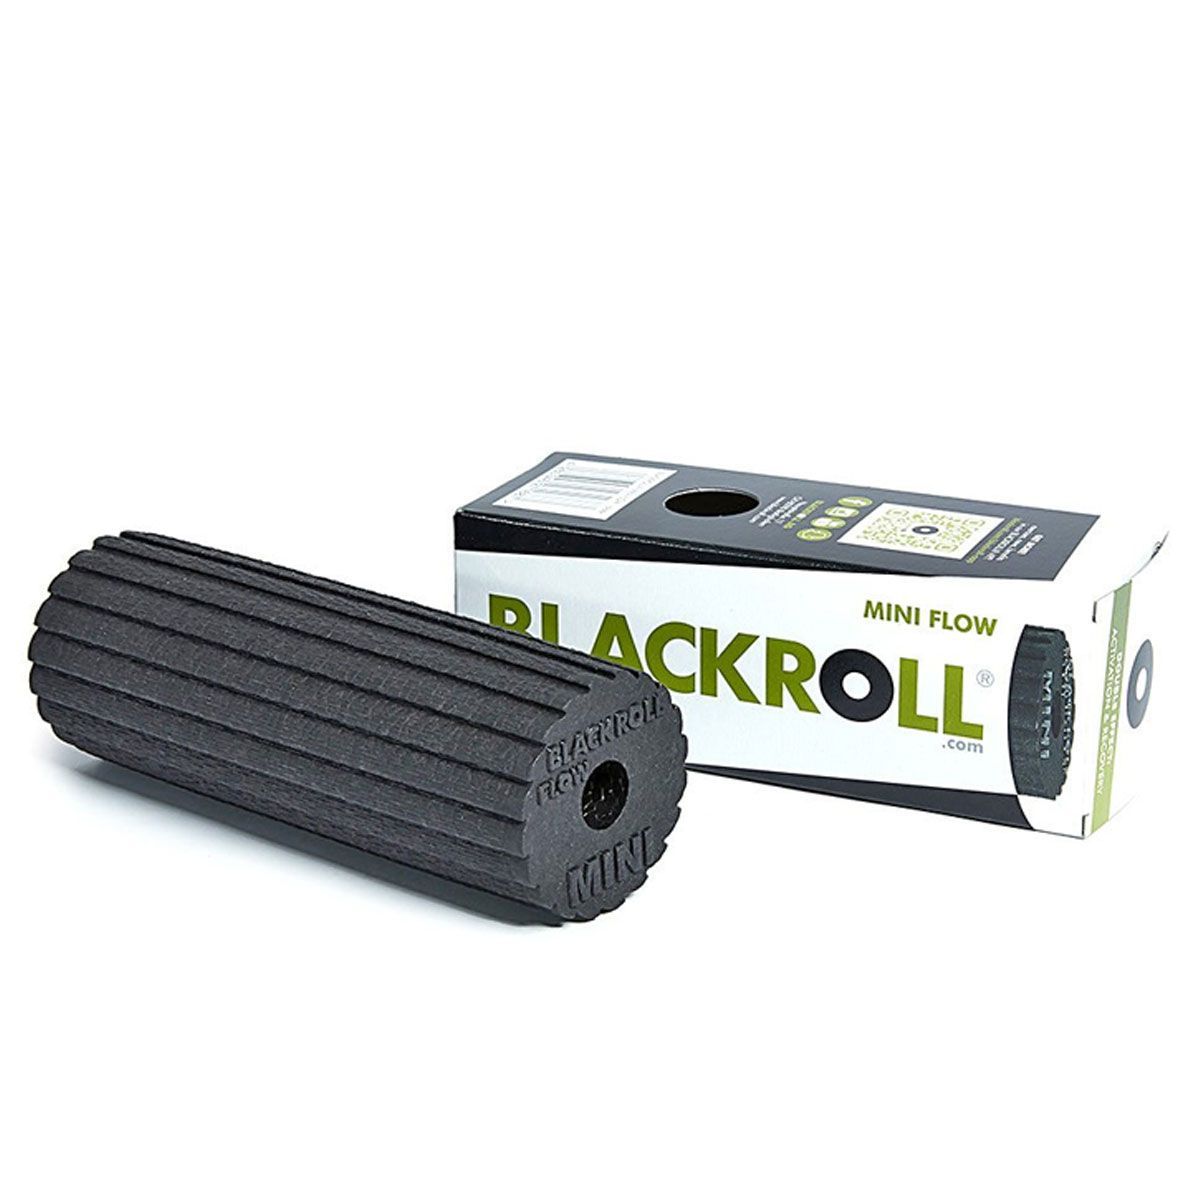 Die Black Roll Mini zur Behandlung Ihrer Faszie an der Ferse, der Plantarfaszie.